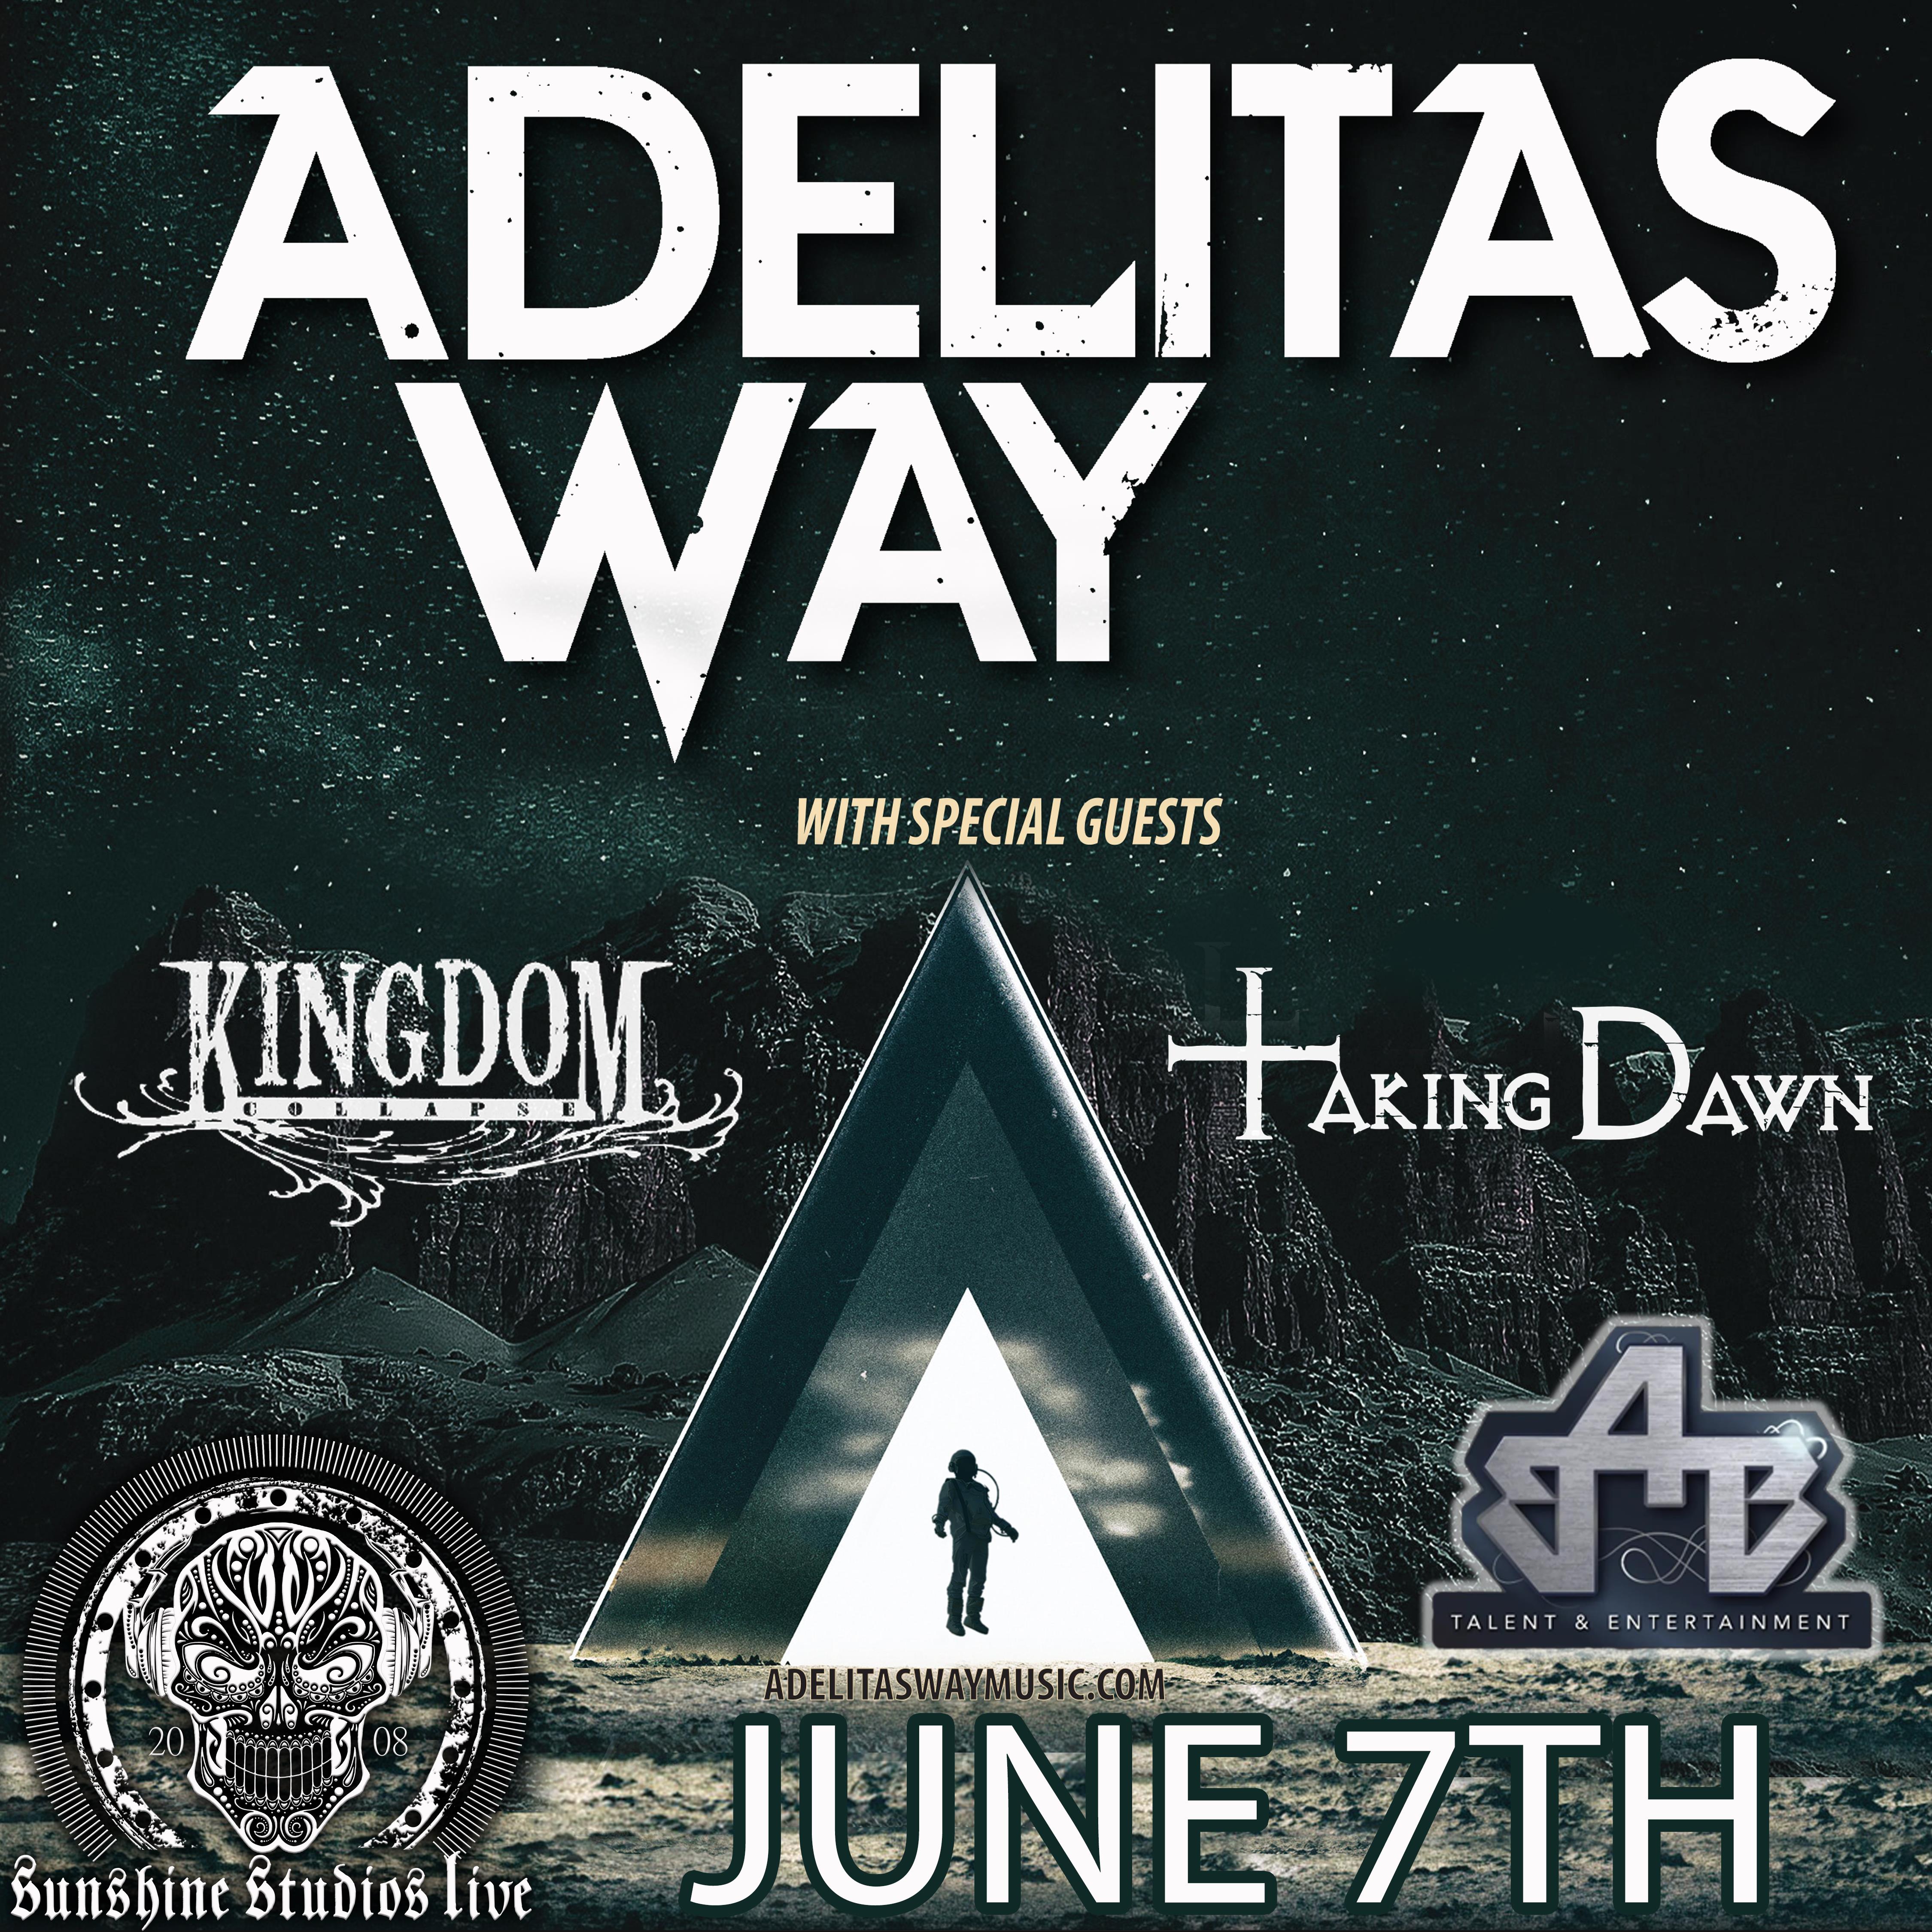 Buy Tickets to Adelitas Way in Colorado Springs on Jun 07, 2022